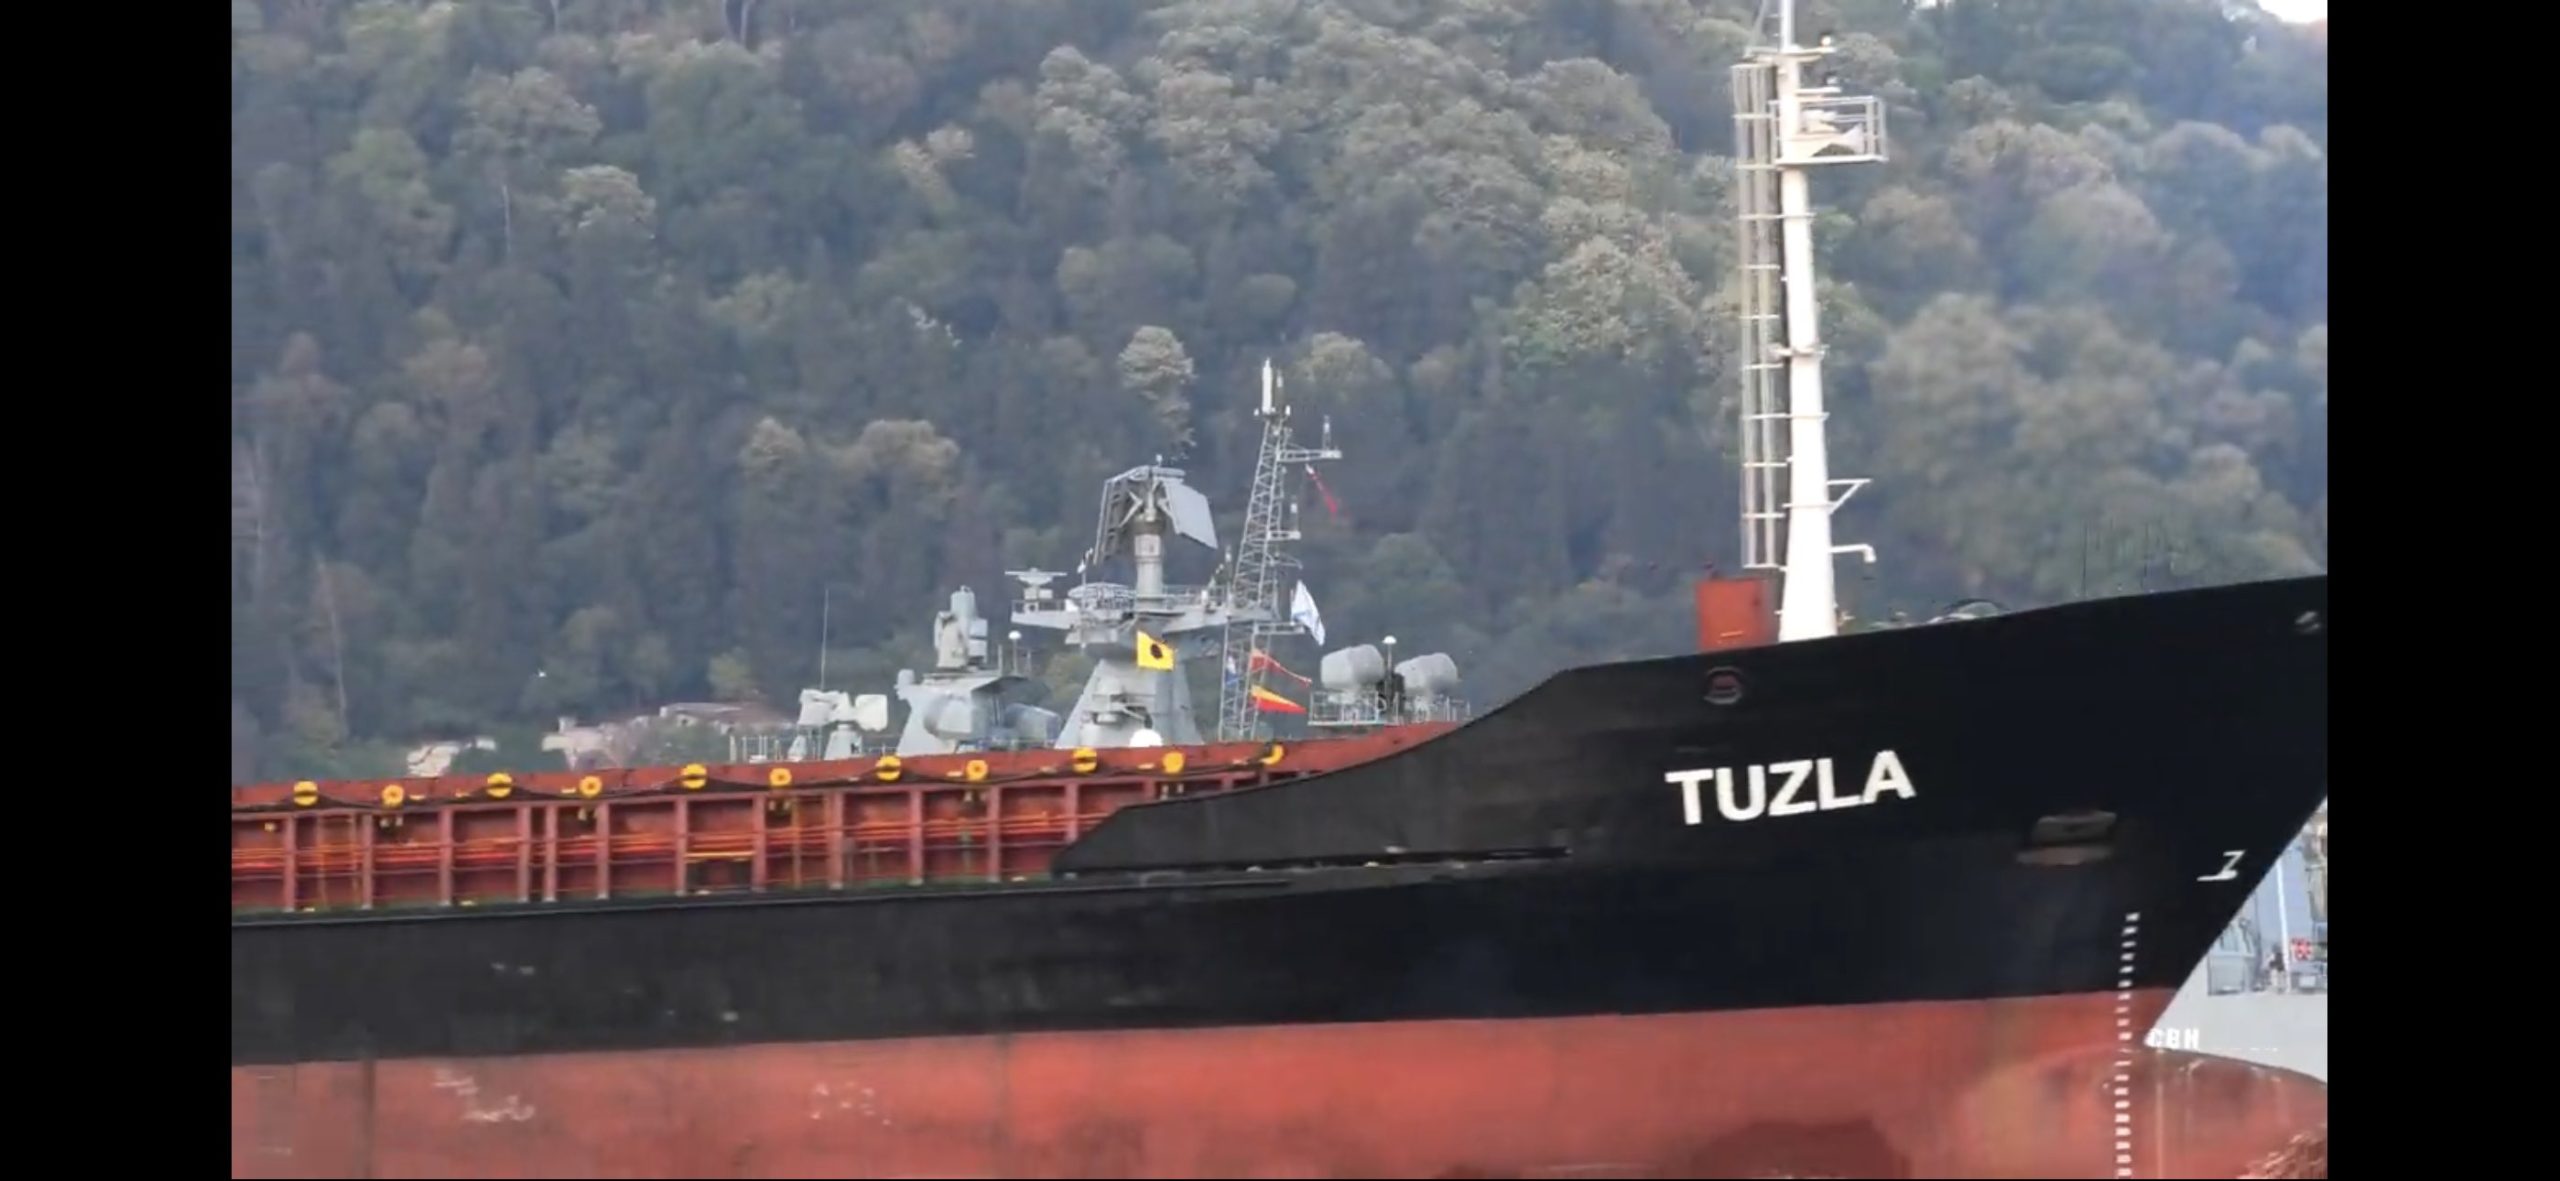 Τουρκικό πλοίο χτυπήθηκε από ρωσικό πύραυλο στο λιμάνι της Χερσώνας (φωτό)